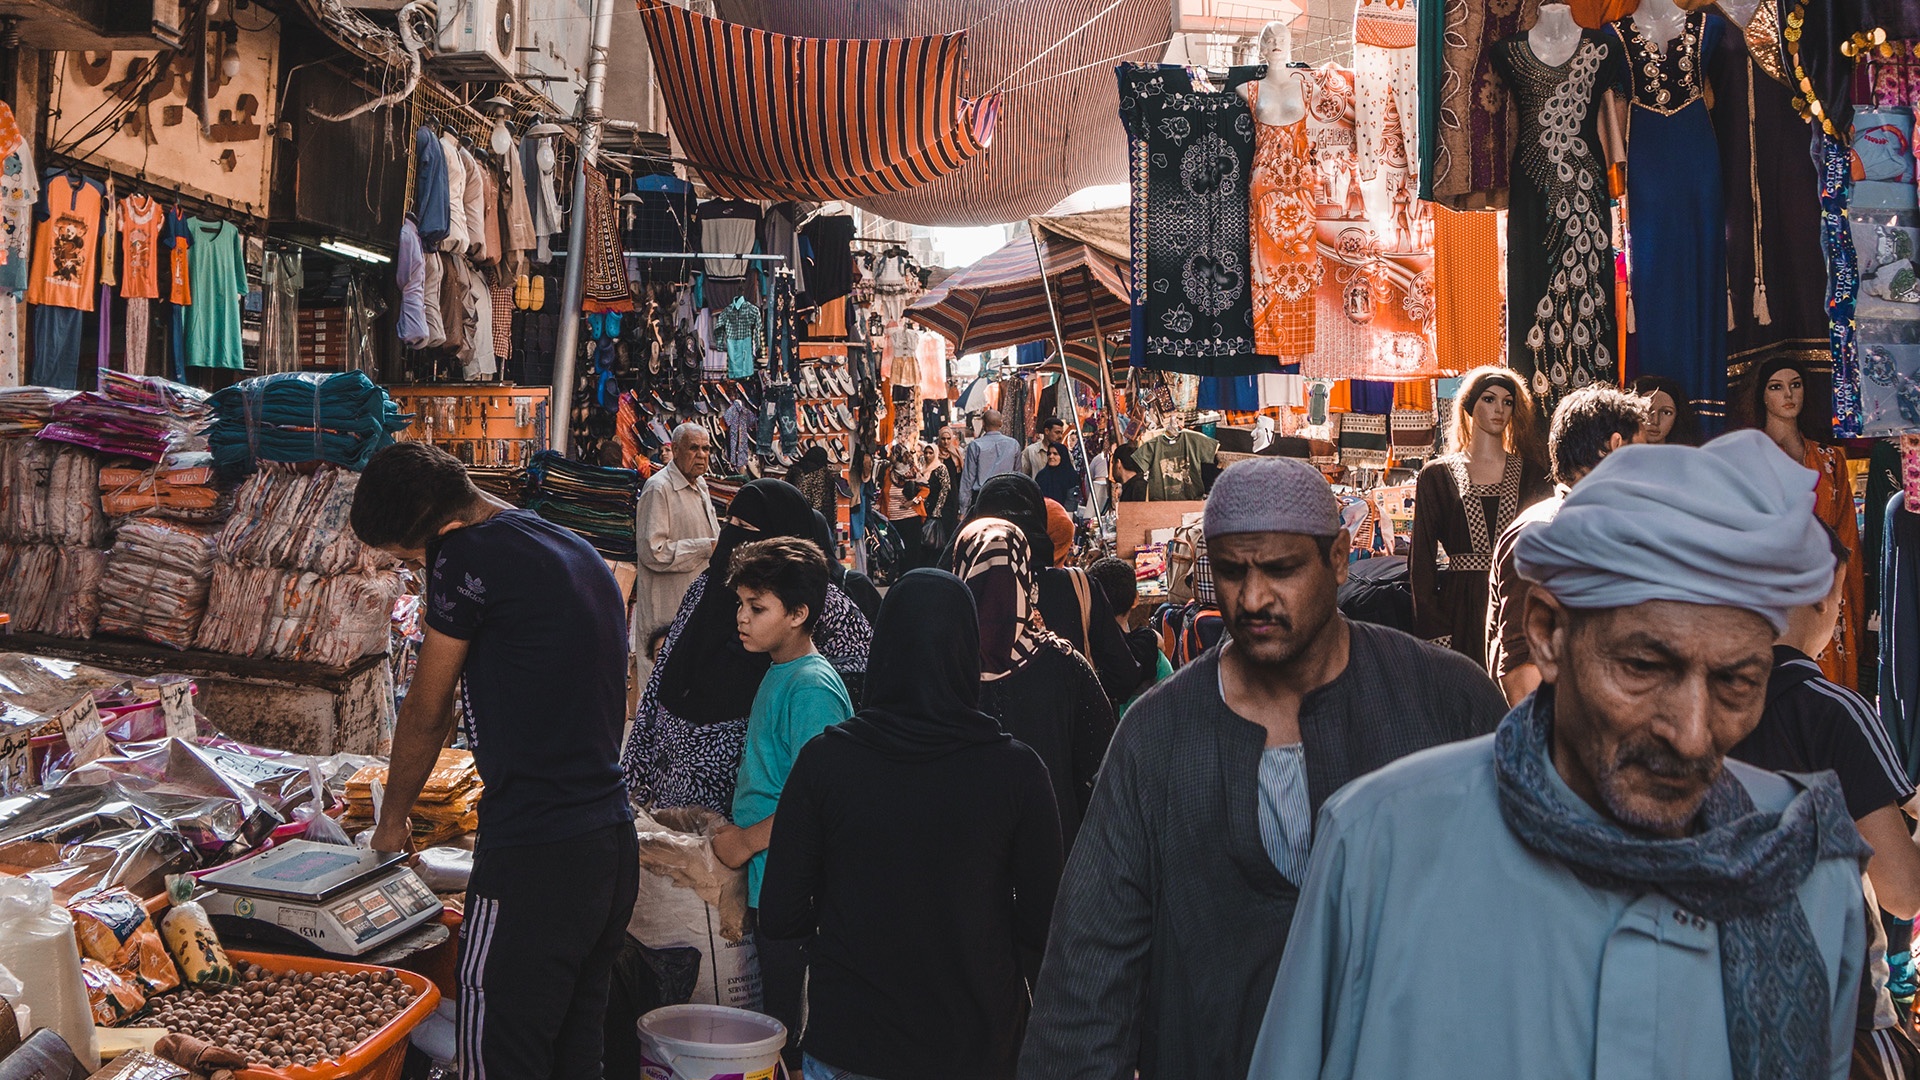 Markt in Ägyptens Hauptstadt Kairo mit verschiedenen Ständen